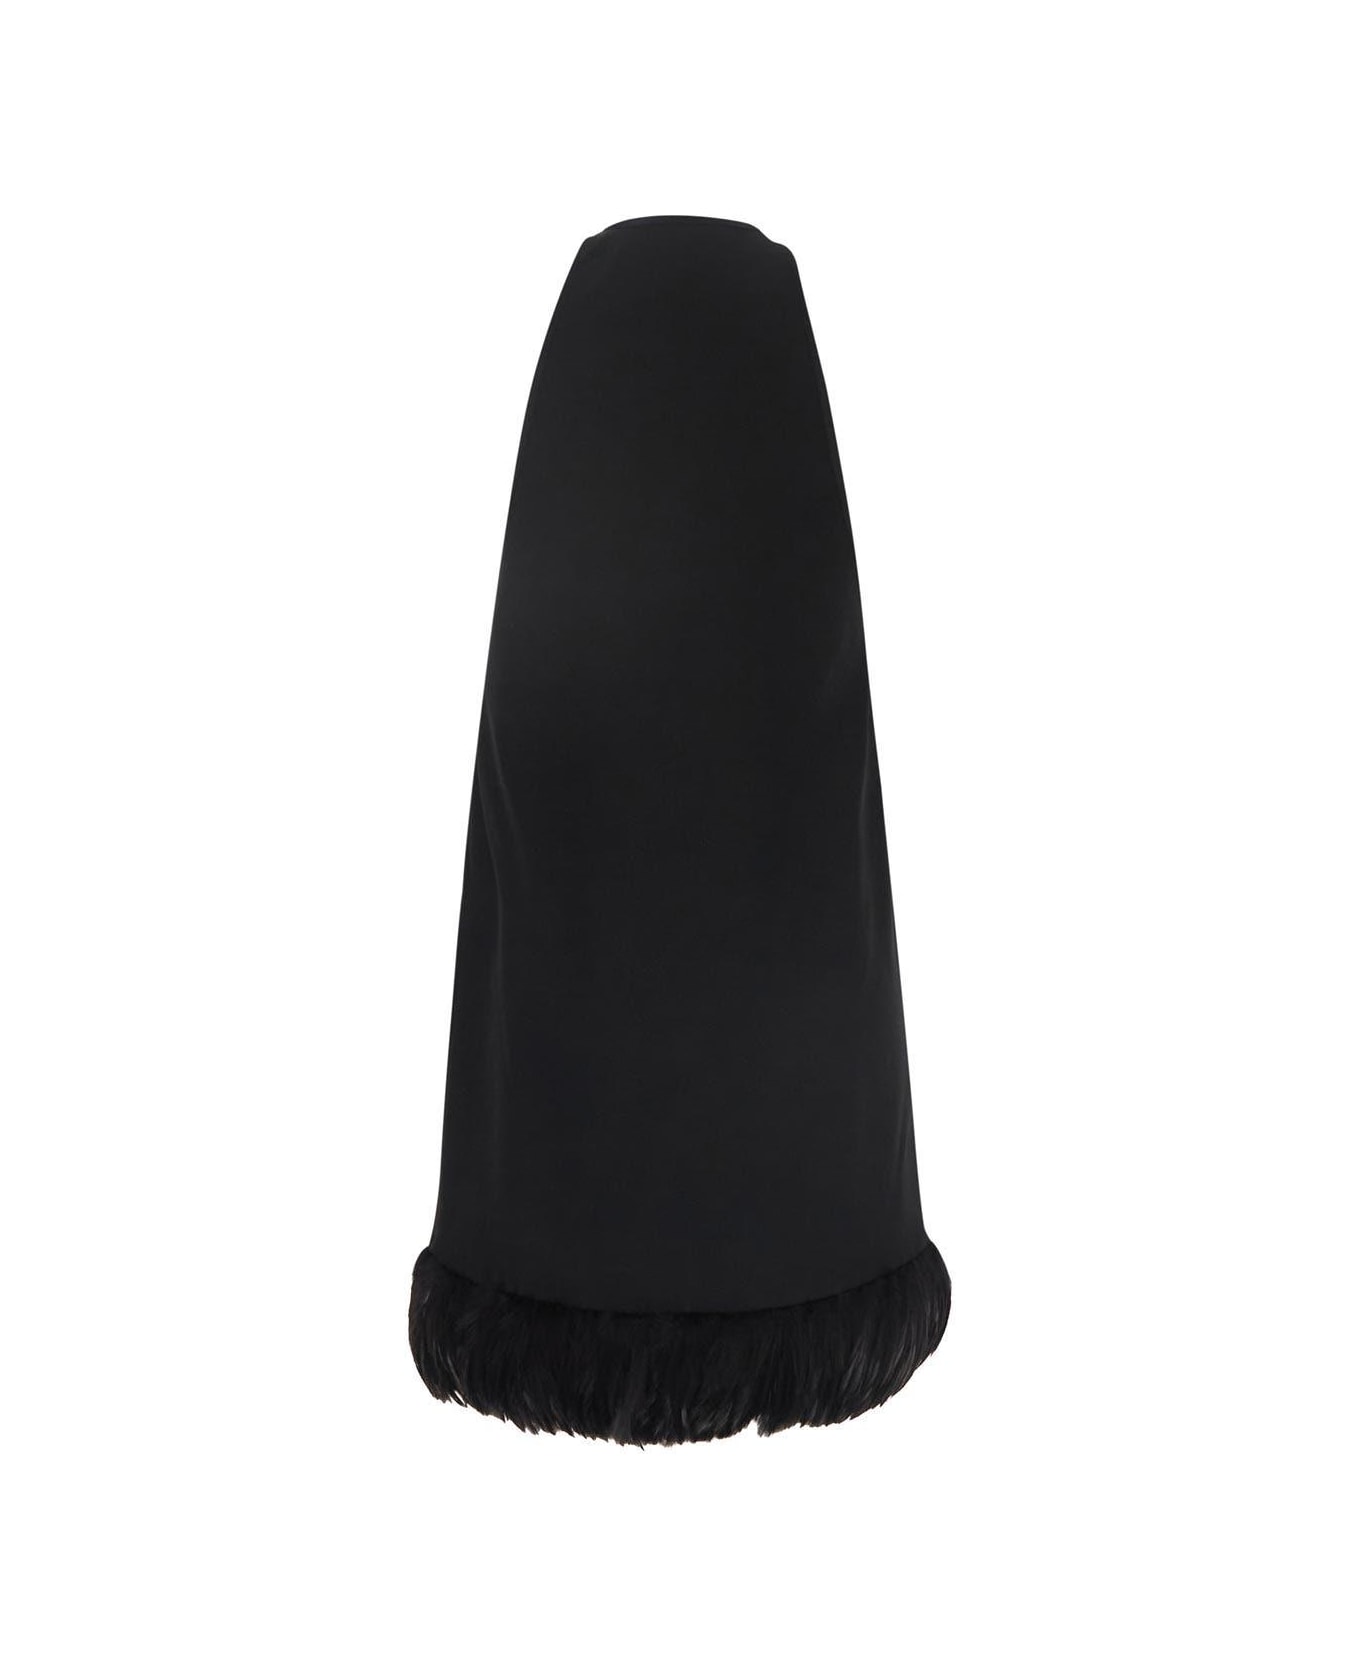 Saint Laurent Feathers Dress - Black